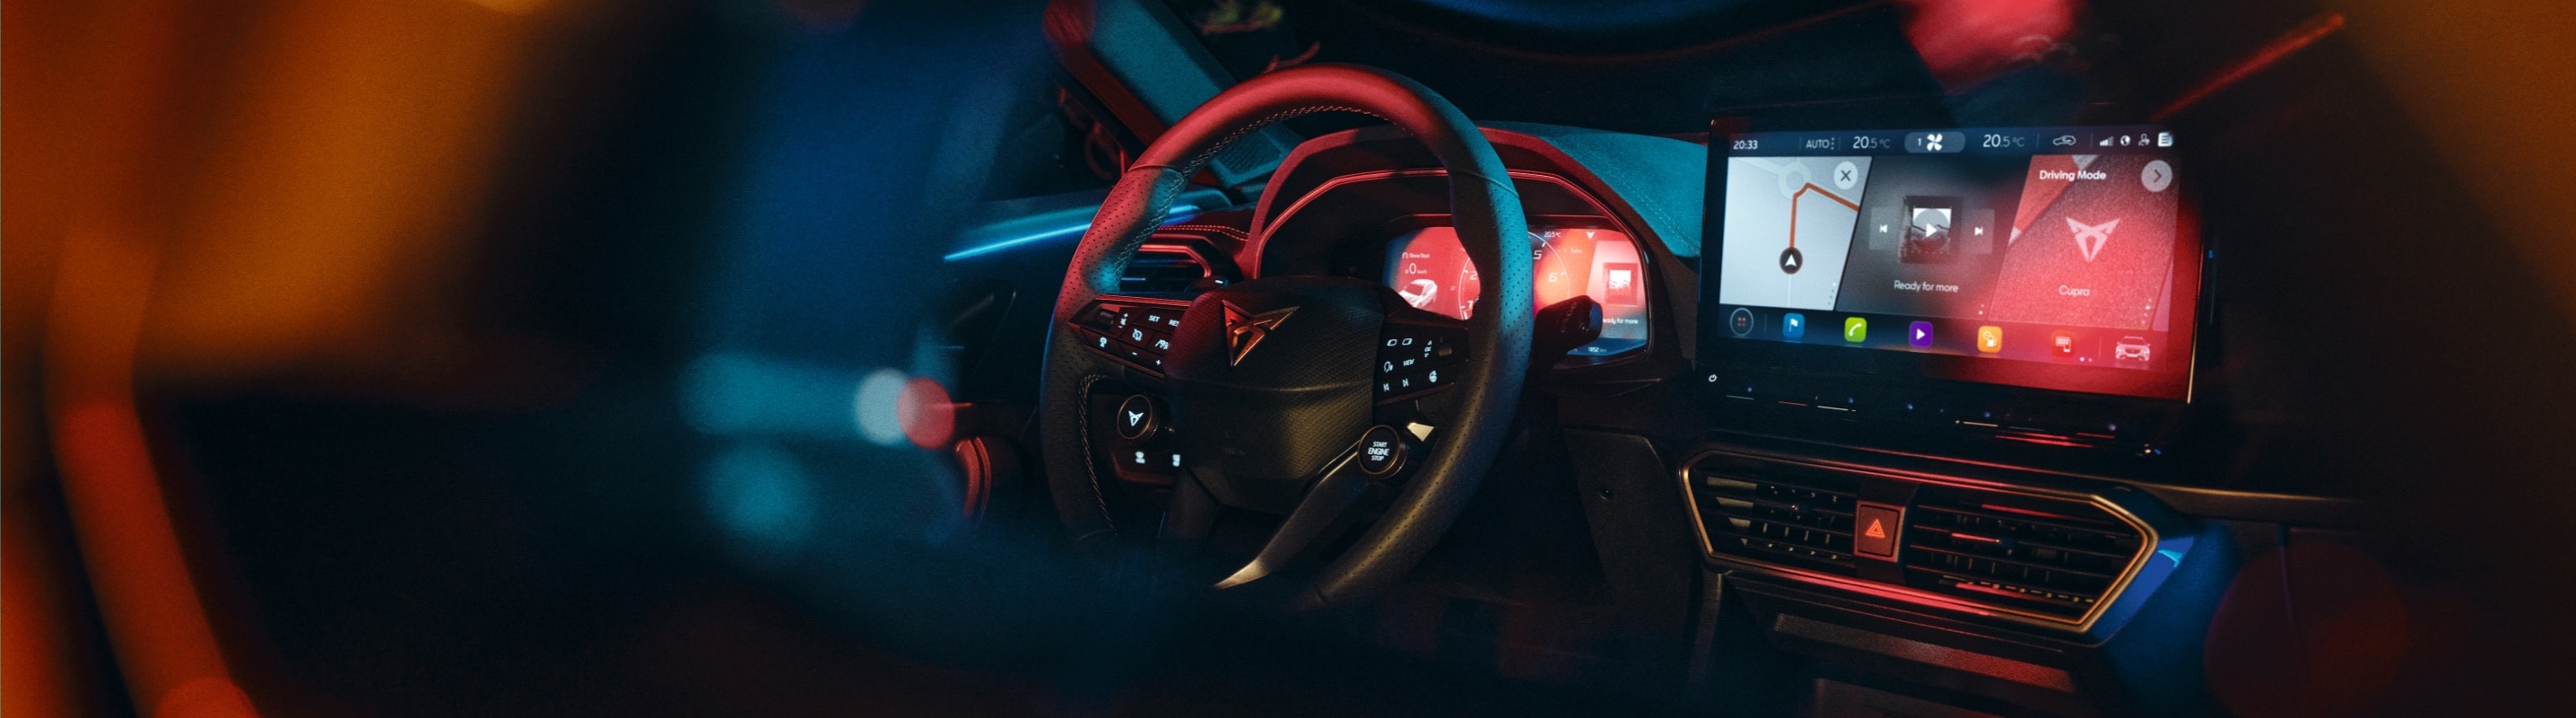 Nastrojowo oświetlone wnętrze samochodu marki CUPRA